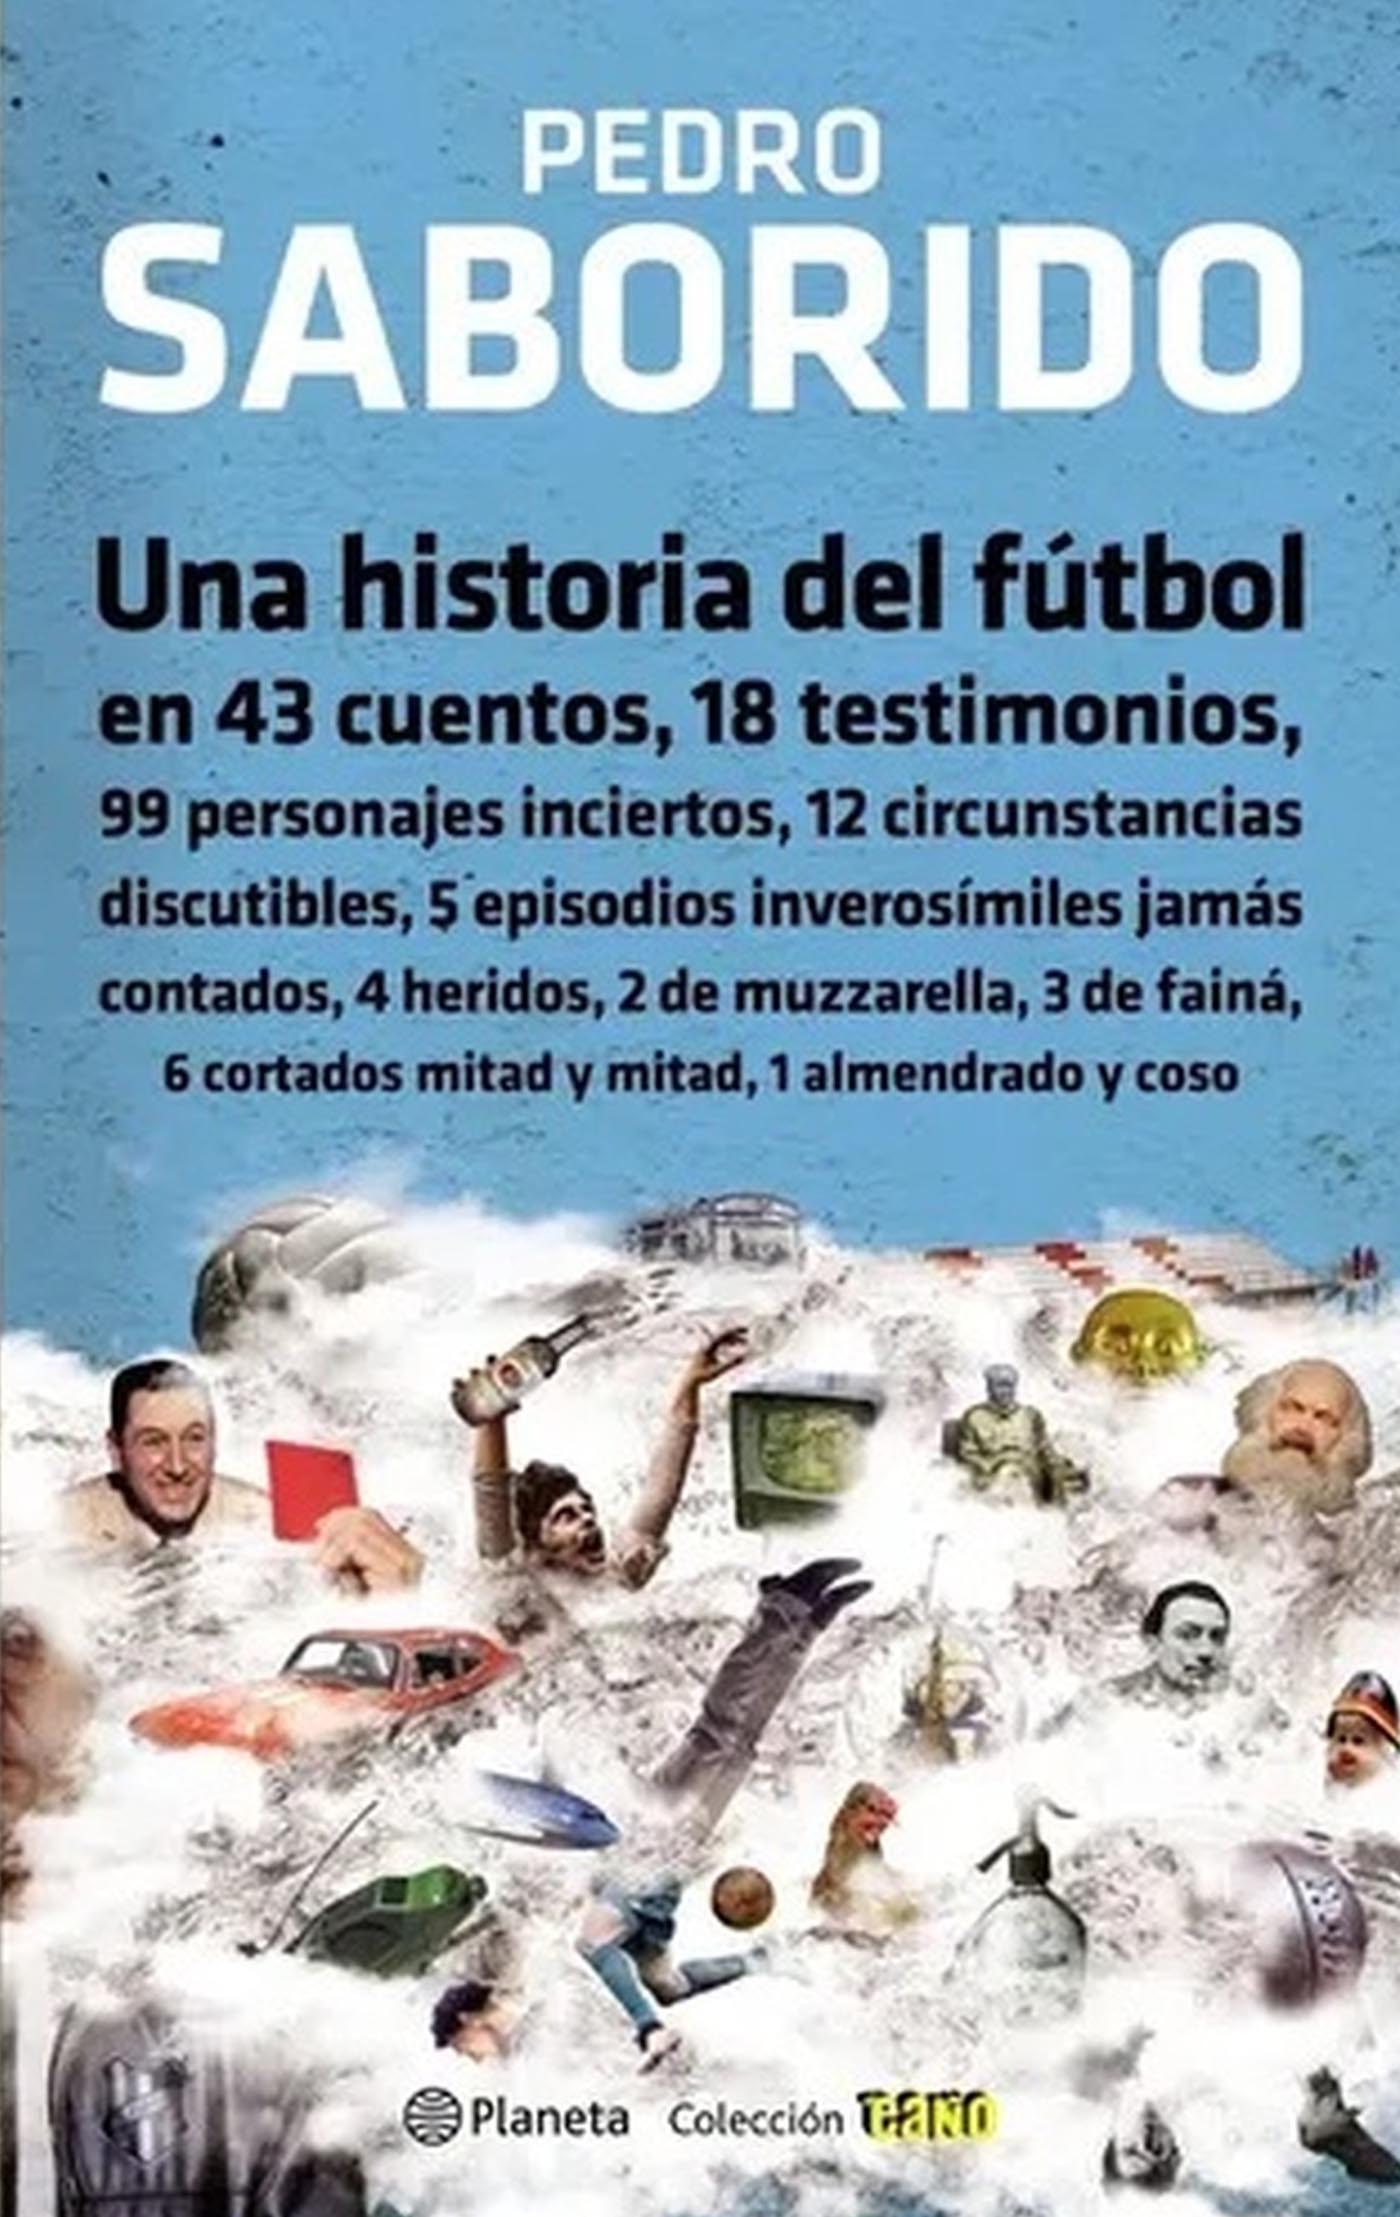 Una historia del fútbol Pedro Saborido